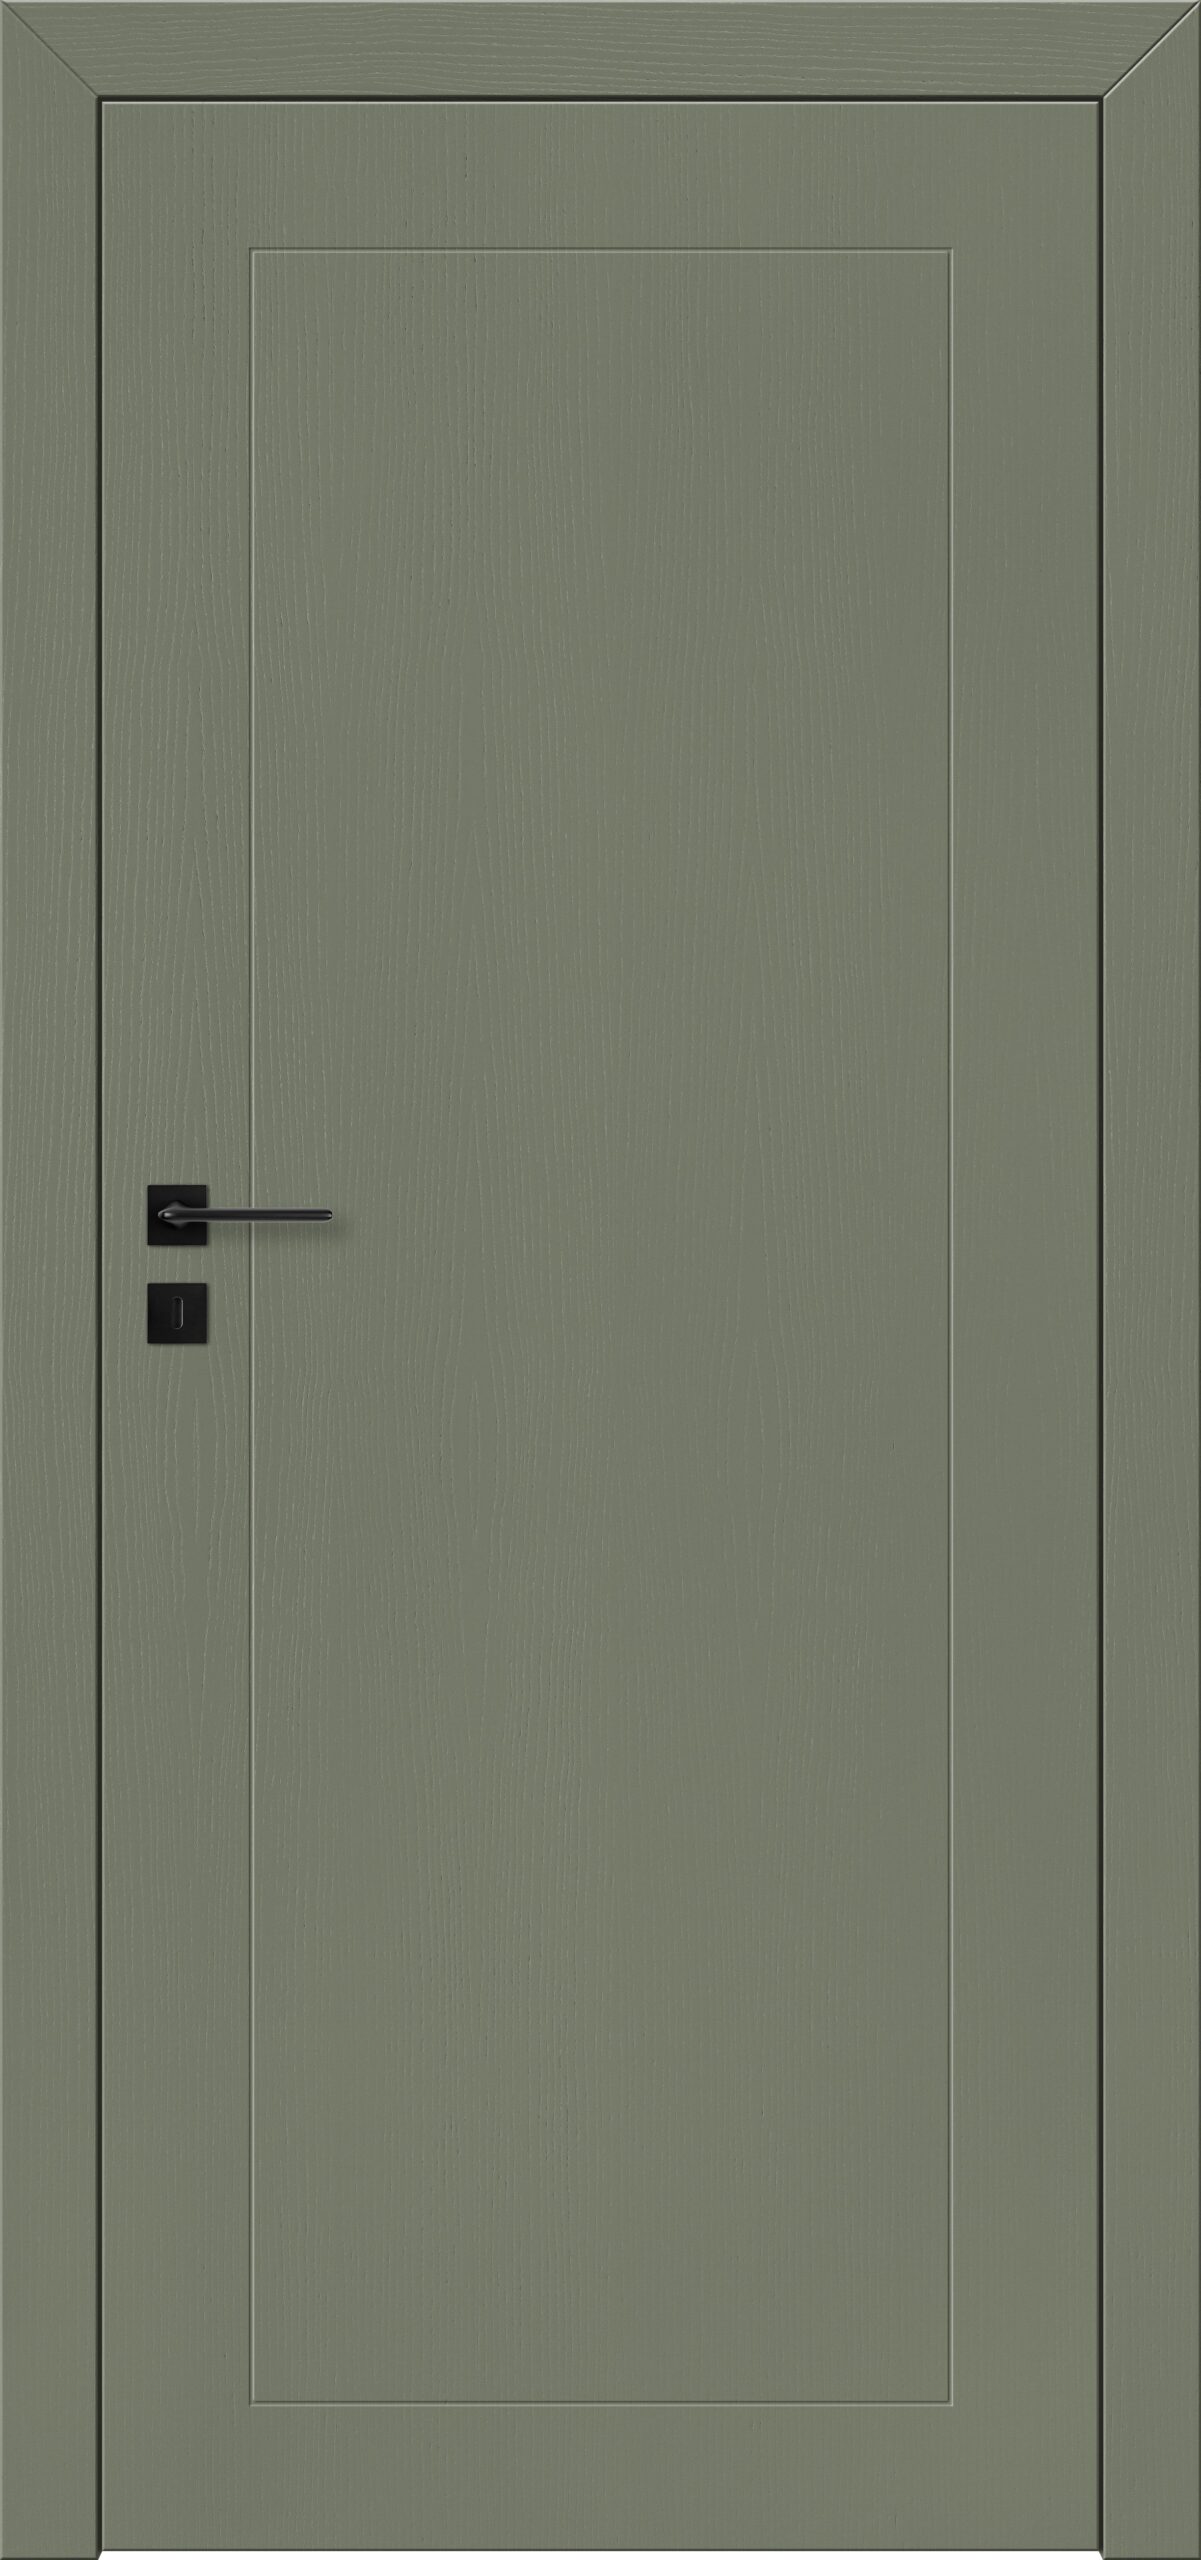 Lupo A5 bez listwy - Zielony Khaki RAL 6003